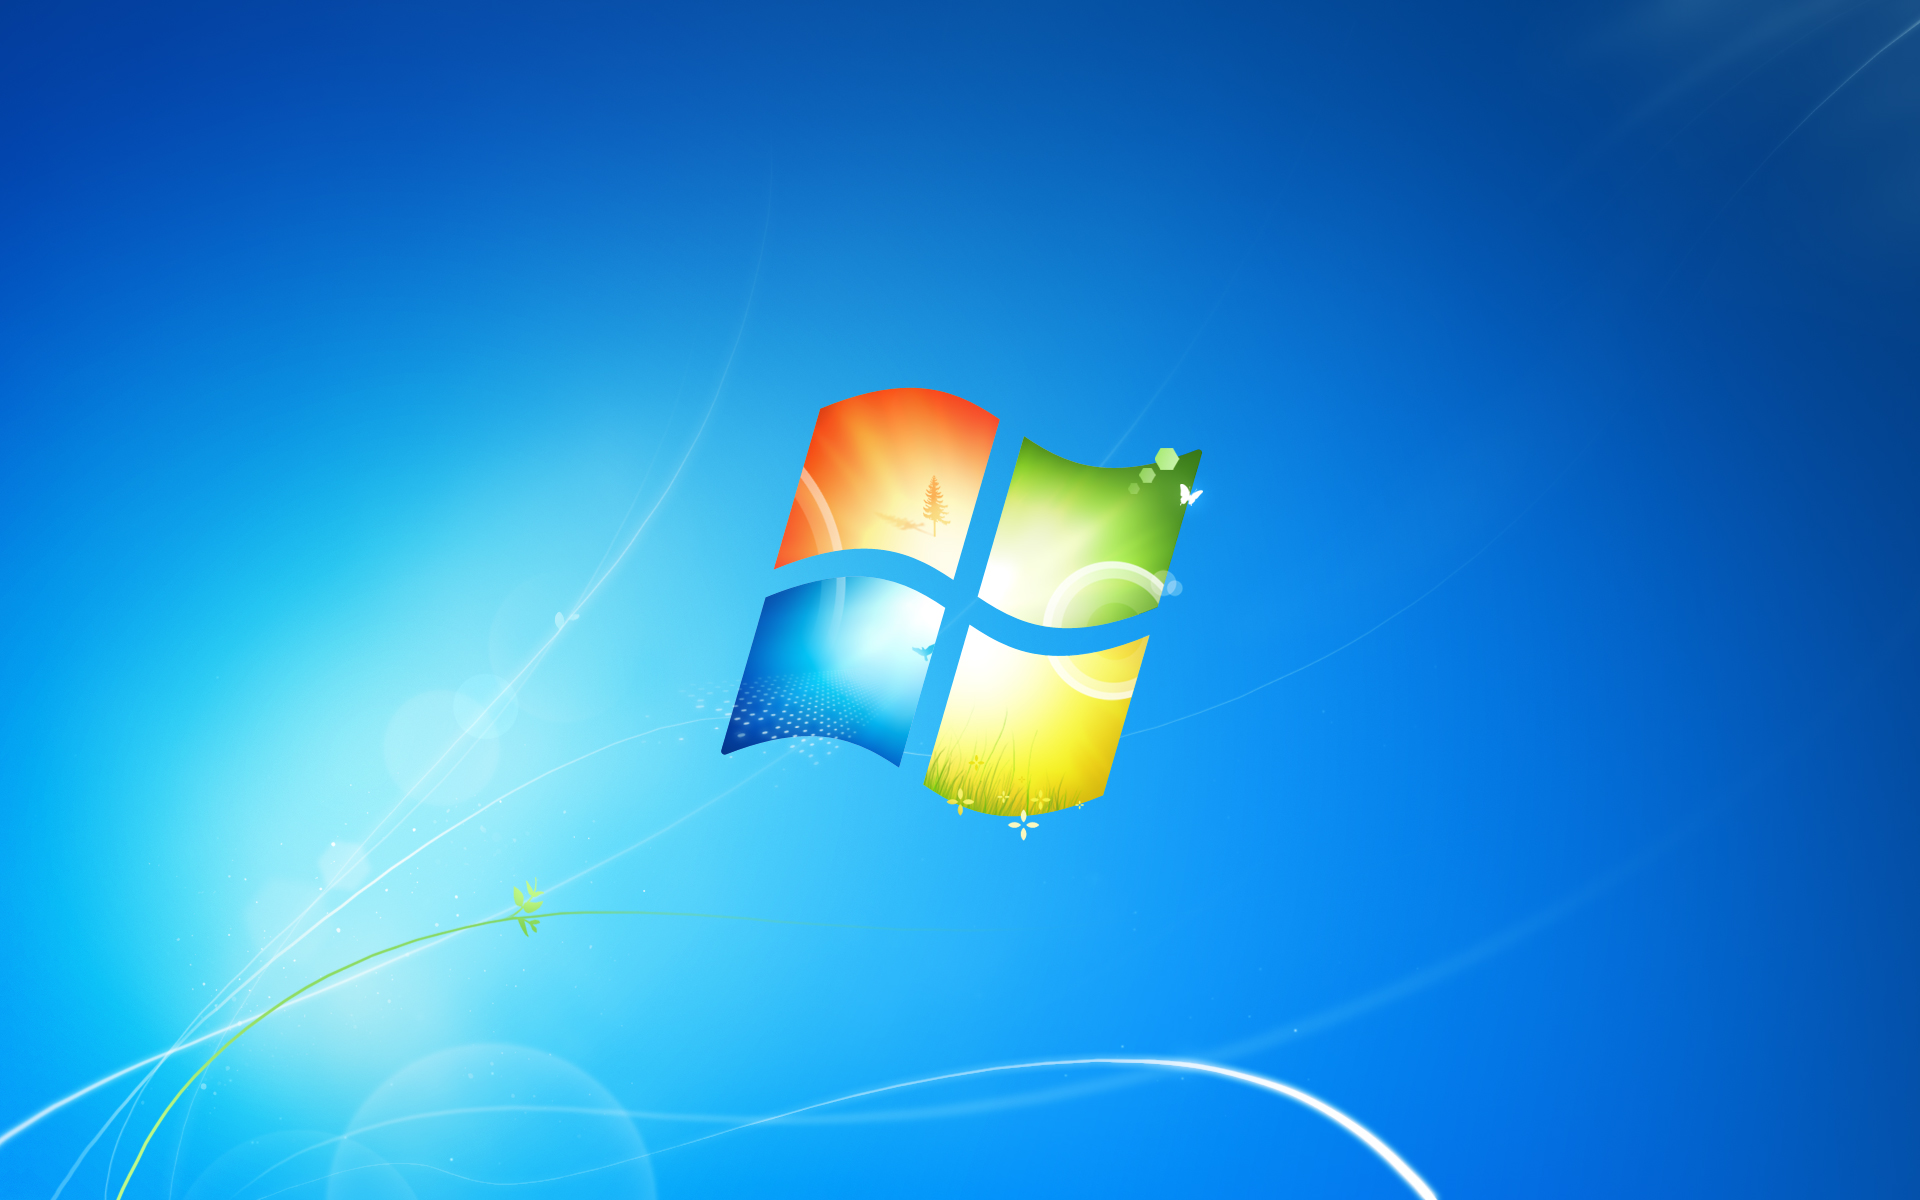 Versión completa del fondo de pantalla de Windows 7.